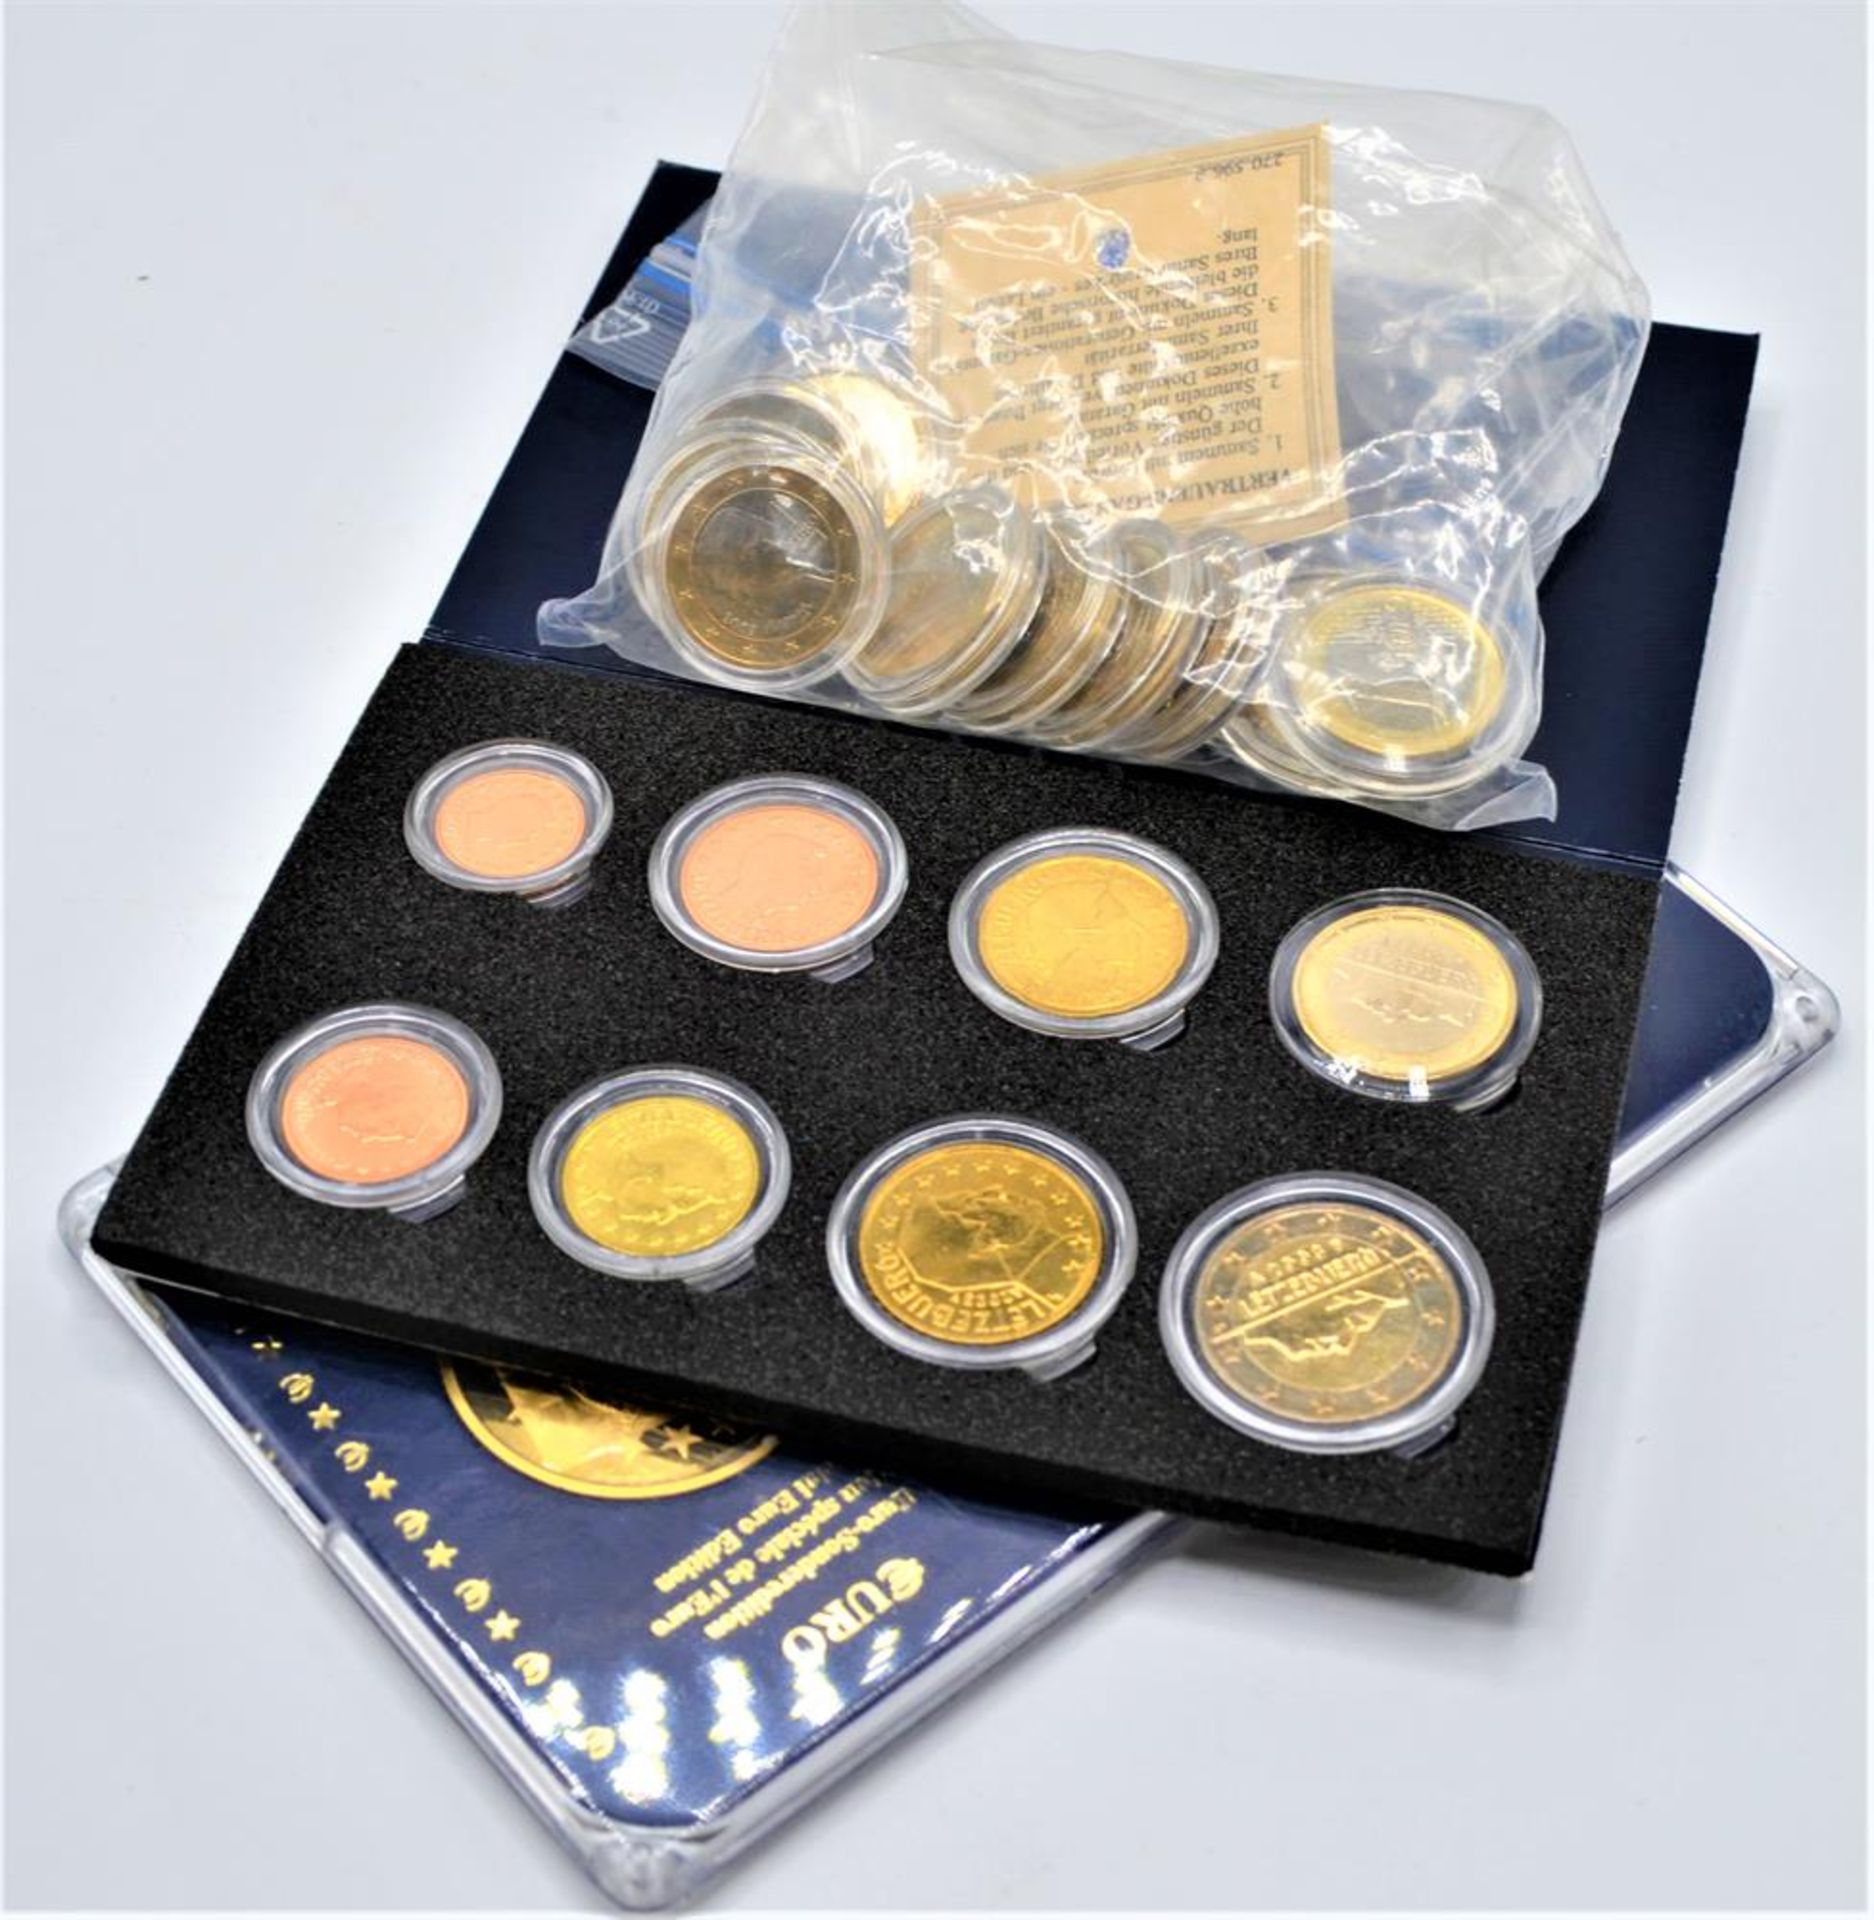 Konvolut Euro Münzen, Kursmünzensatz von Malta 2003 mit Medaille, Kursmünzensatz Luxemburg 2003 (